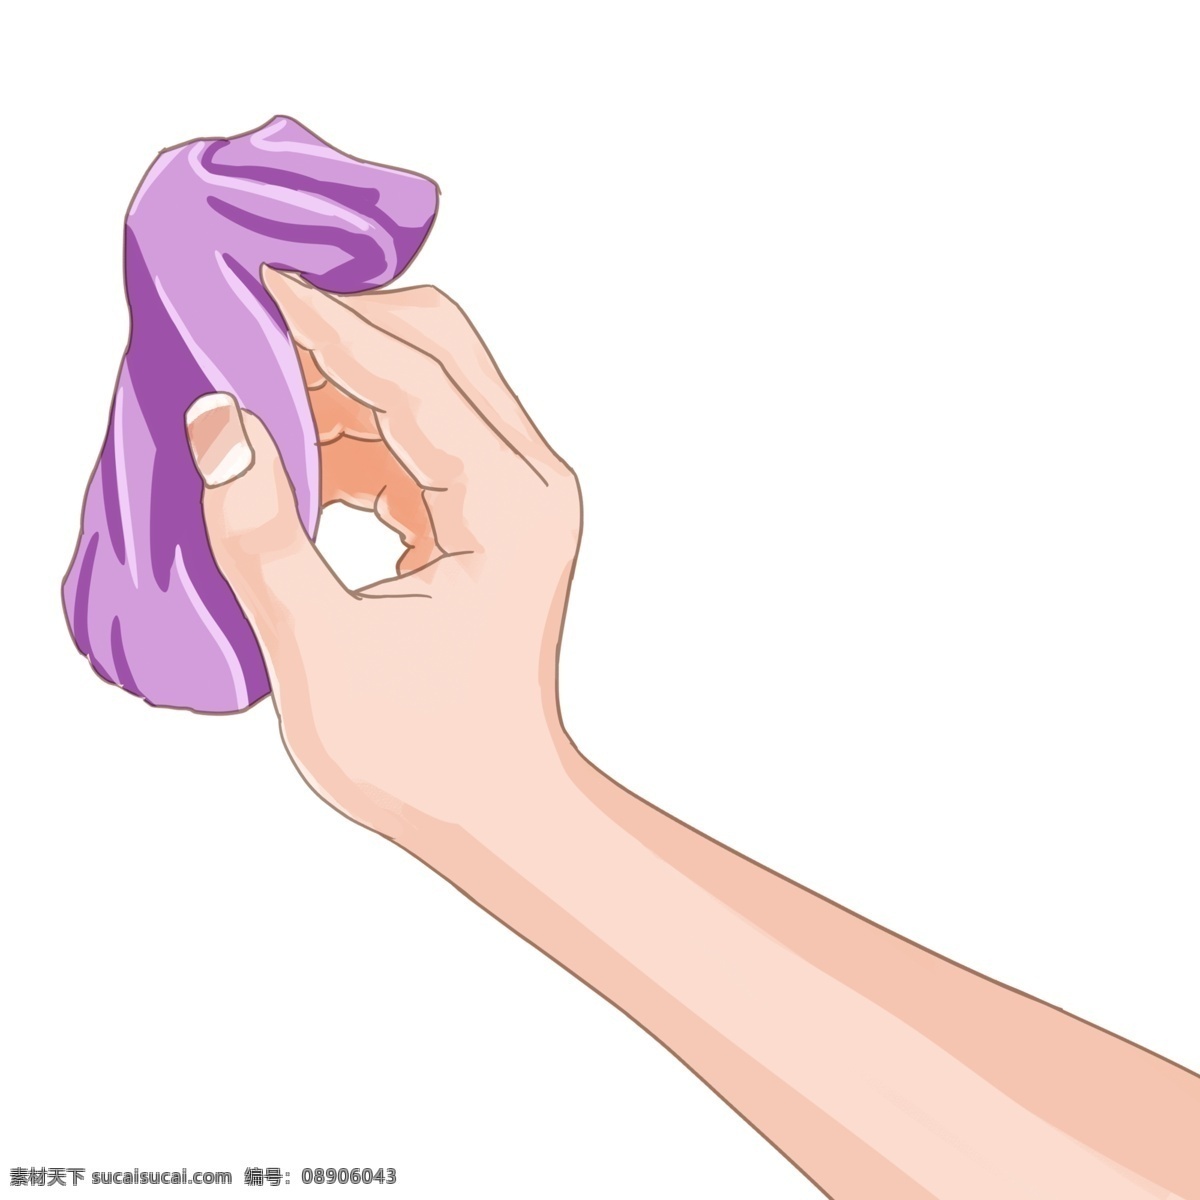 清理 卫生 抹布 紫色 手 清洁 整洁